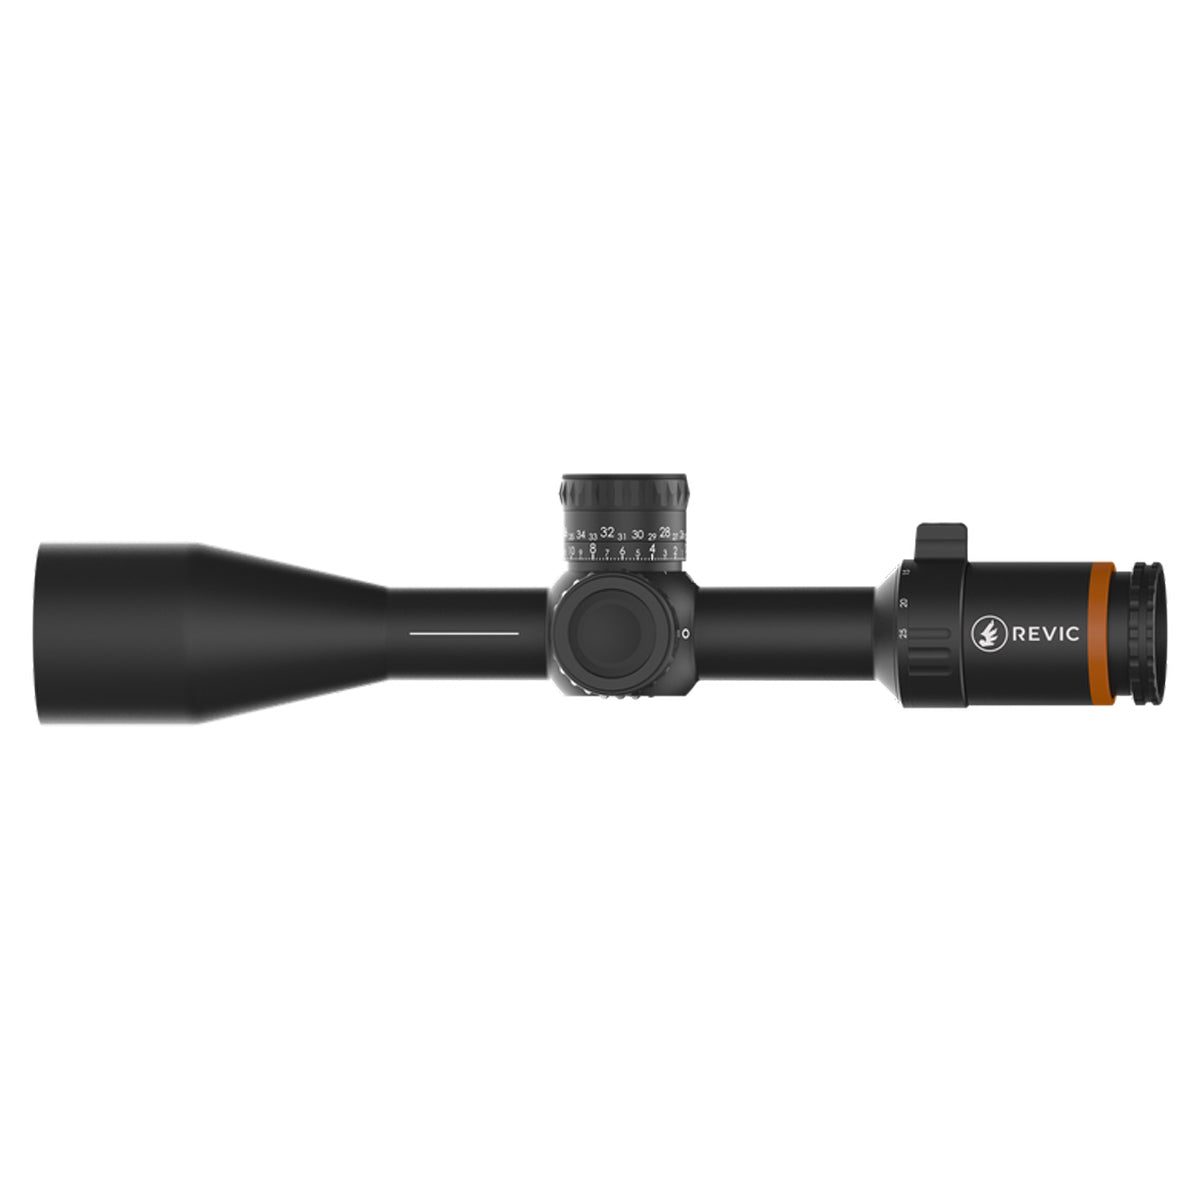 Revic Acura RS25i 5-25x50 Illuminated Riflescope